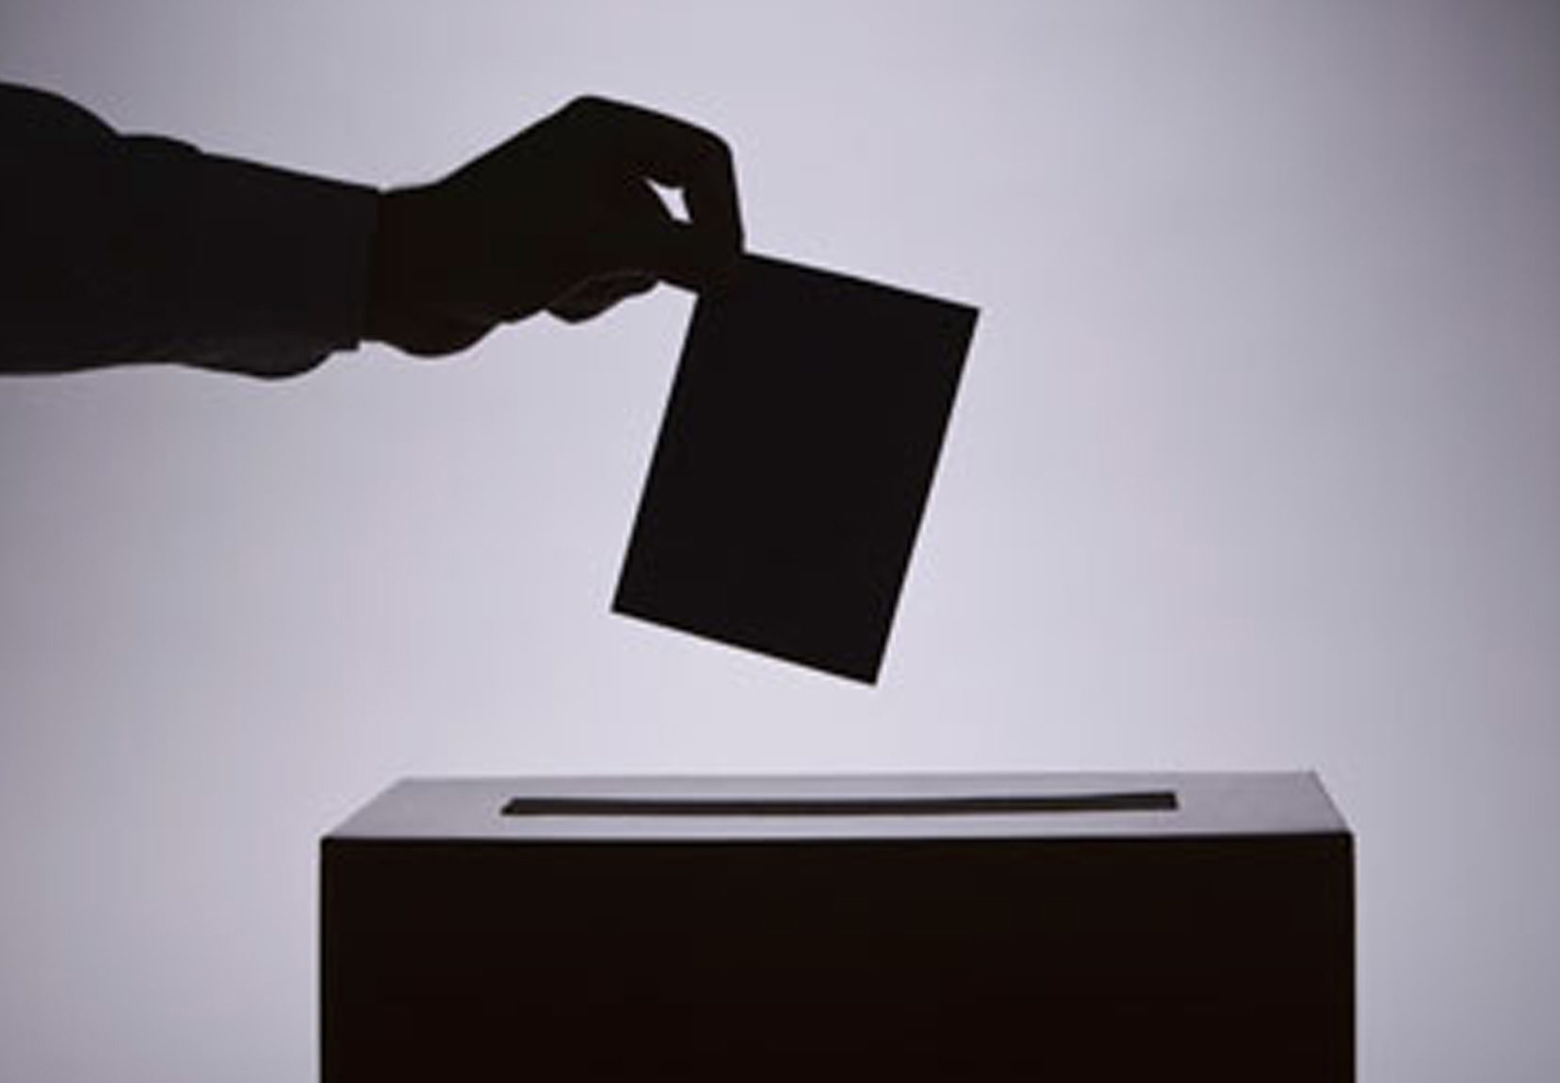 A hand placing a ballot in a ballot box